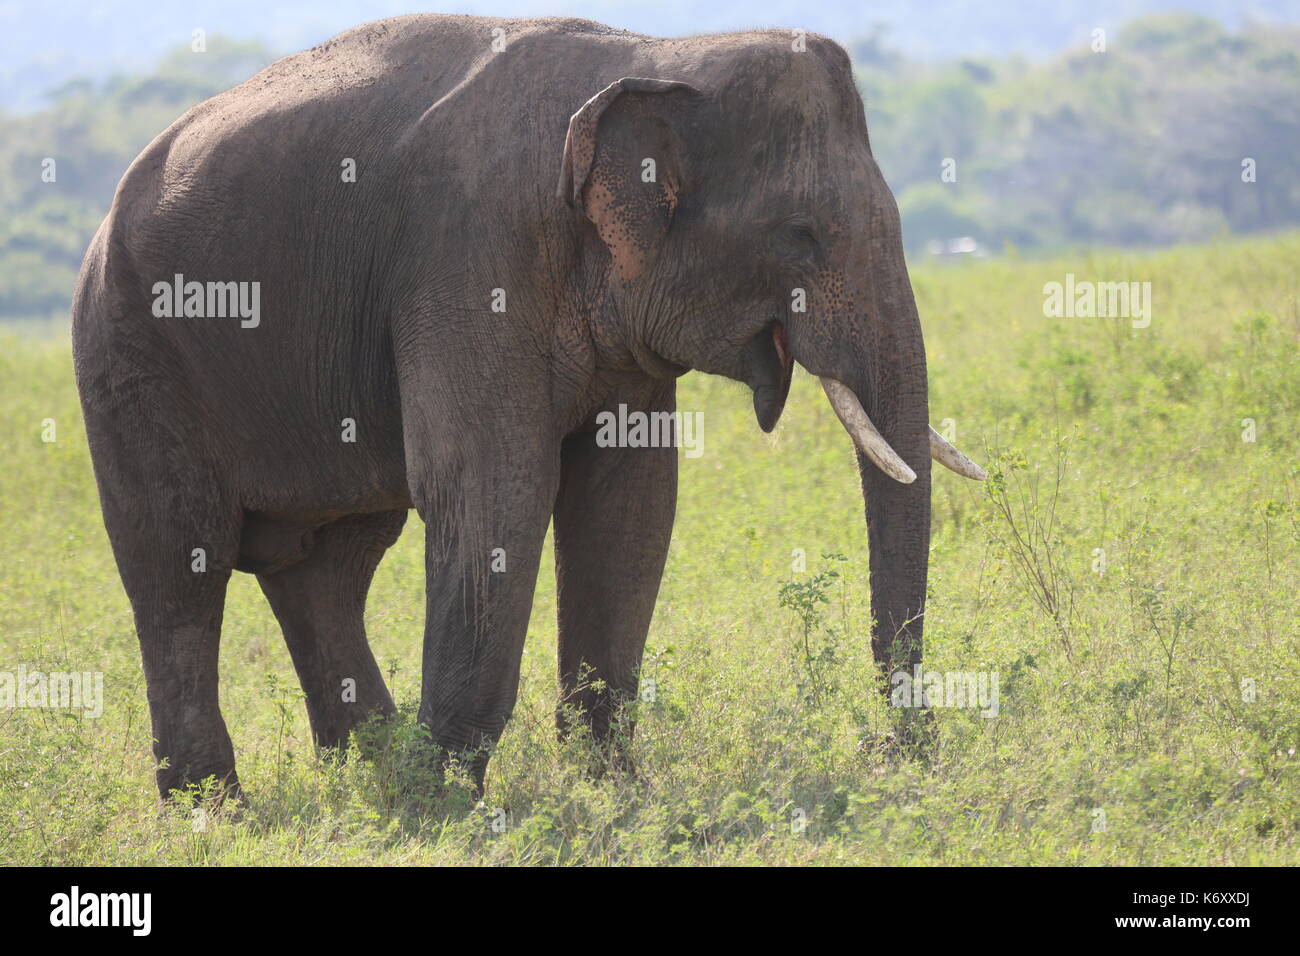 Kaudulla National Park, Wild Sri Lankan Elephants, Asian Stock Photo